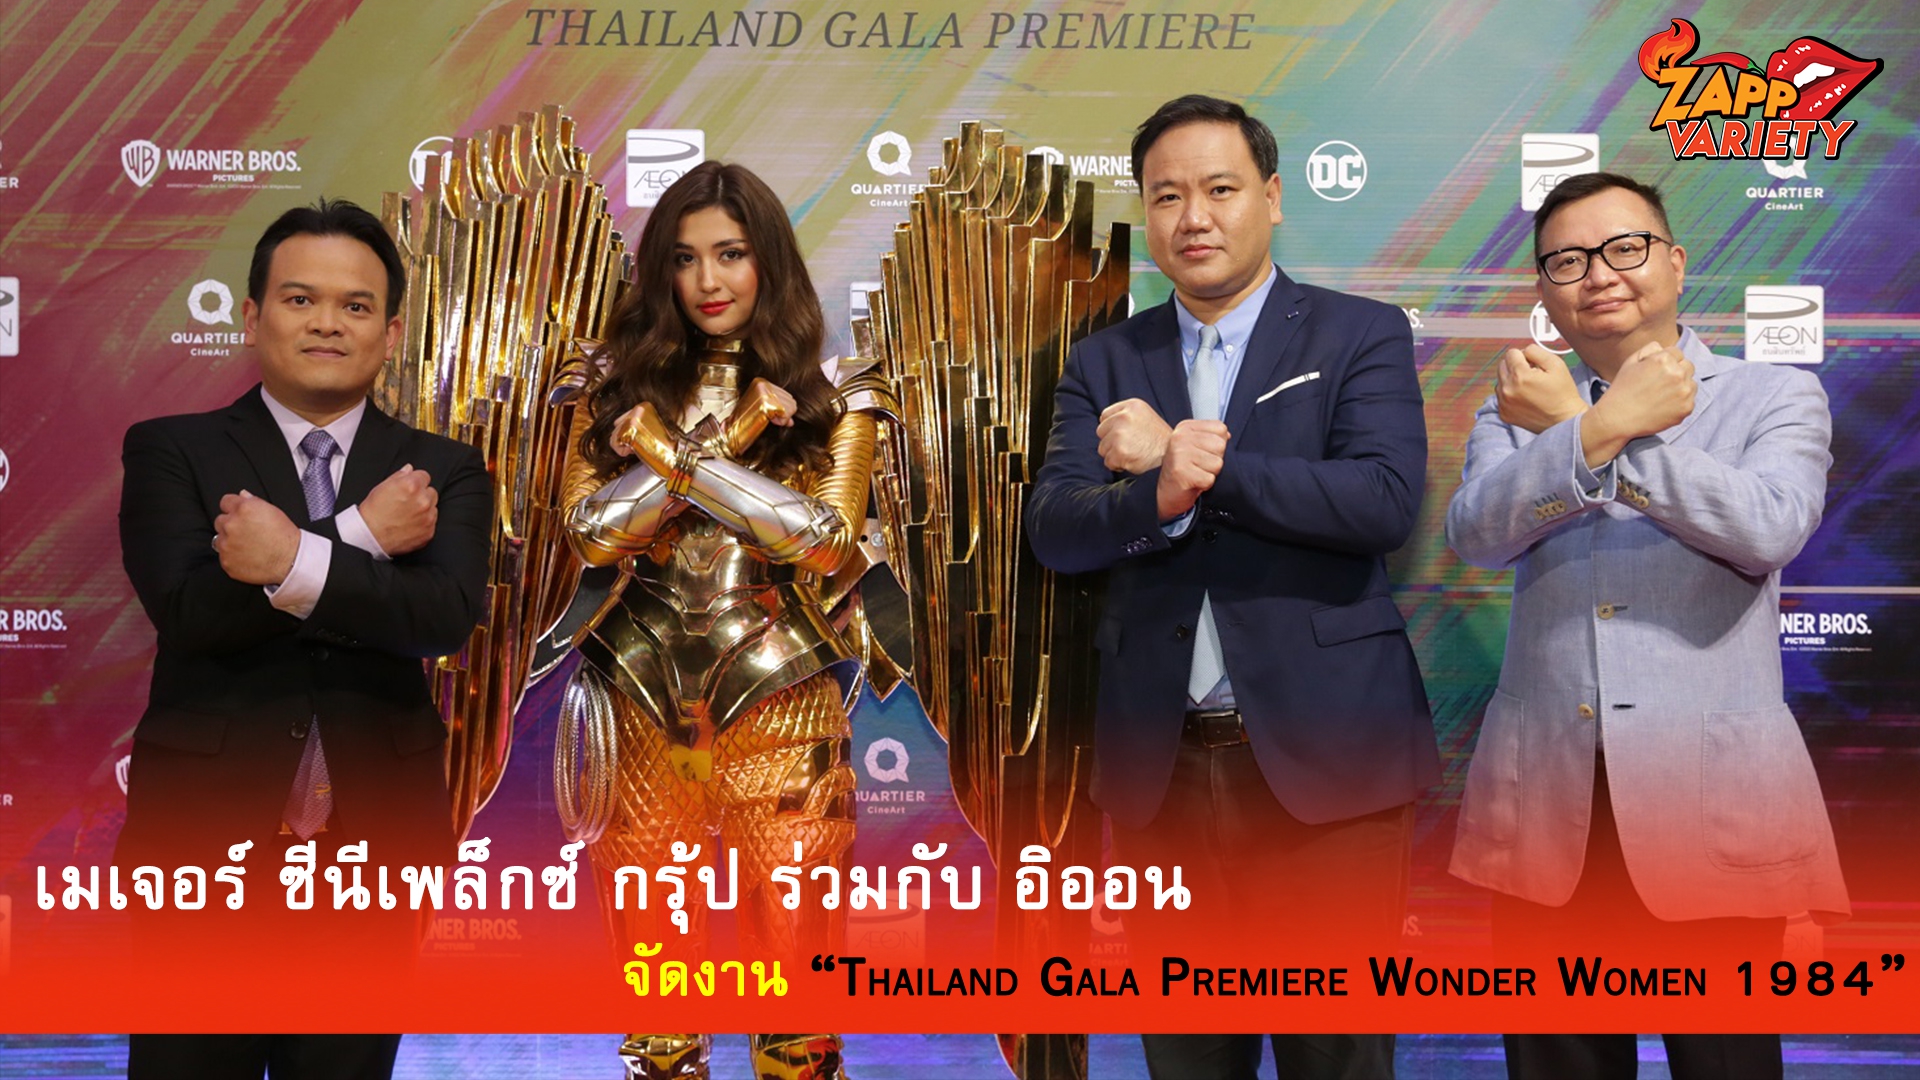 เมเจอร์ ซีนีเพล็กซ์ กรุ้ป ร่วมกับ อิออน จัดงาน “Thailand Gala Premiere Wonder Women 1984” รับการเข้าฉายของภาพยนตร์ฮีโร่ฟอร์มยักษ์แห่งปีที่ทั่วโลกรอคอย